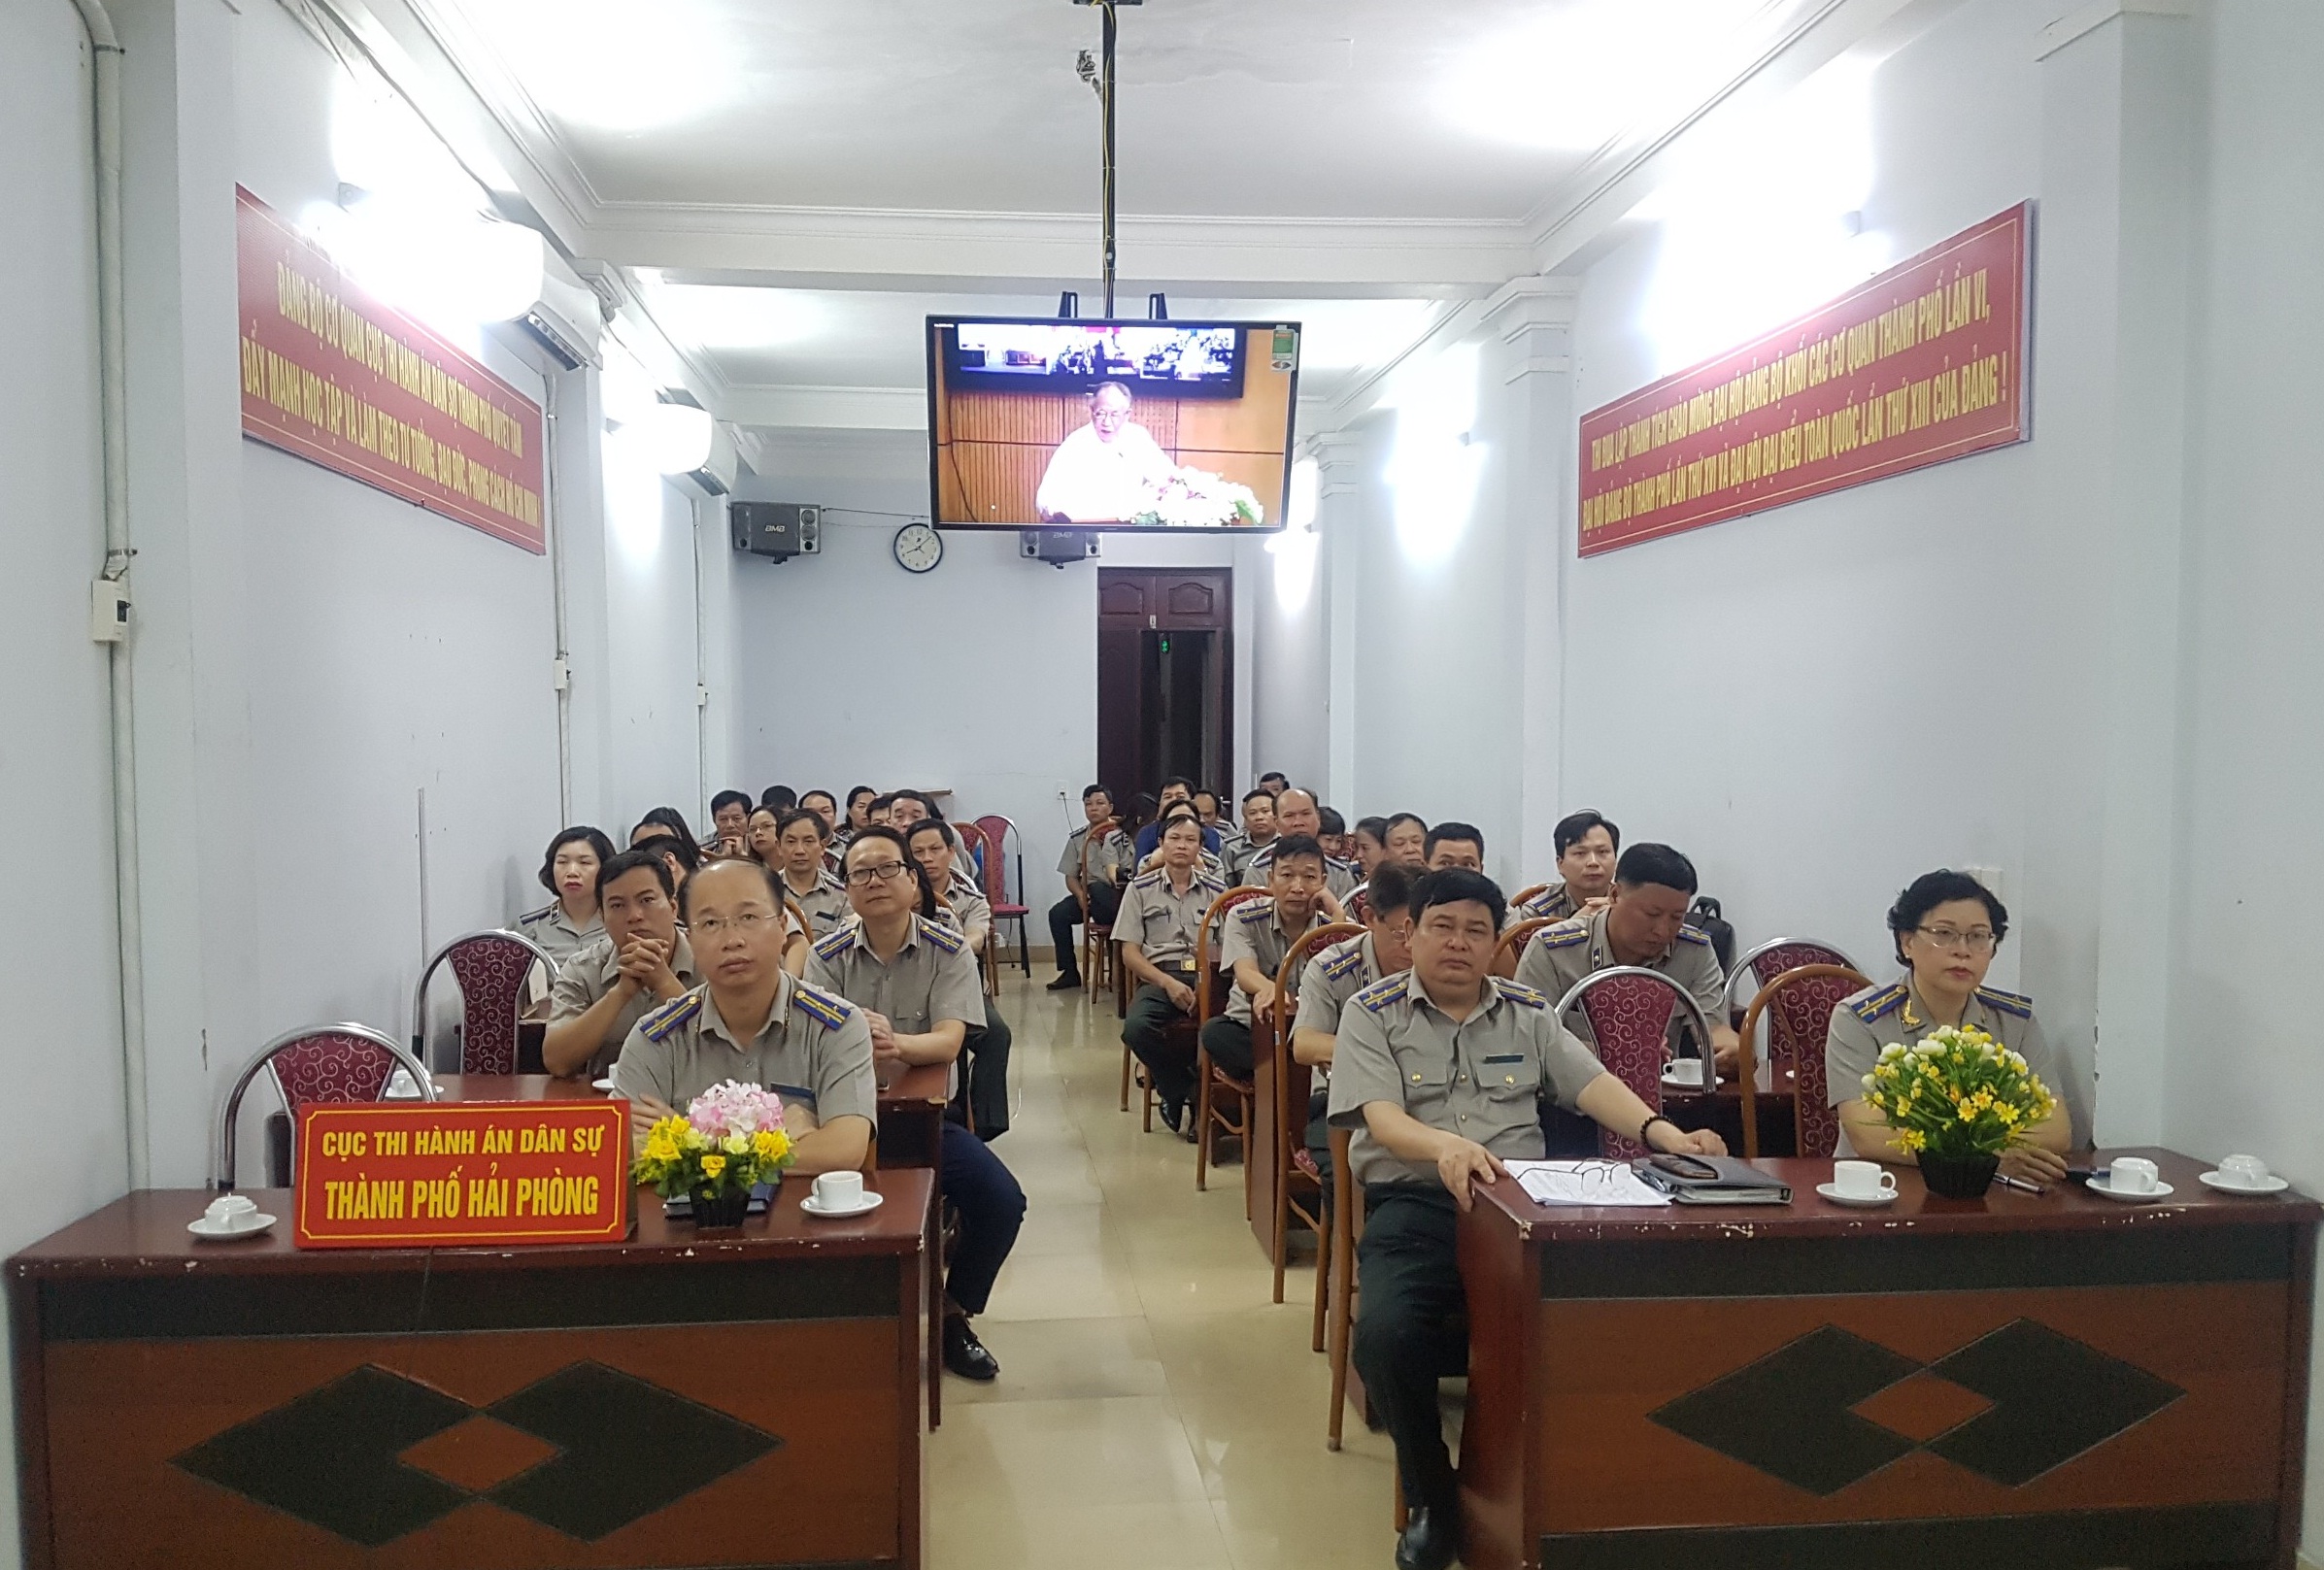 Hội nghị trực tuyến học tập và làm theo tư tưởng, đạo đức, phong cách Hồ Chí Minh